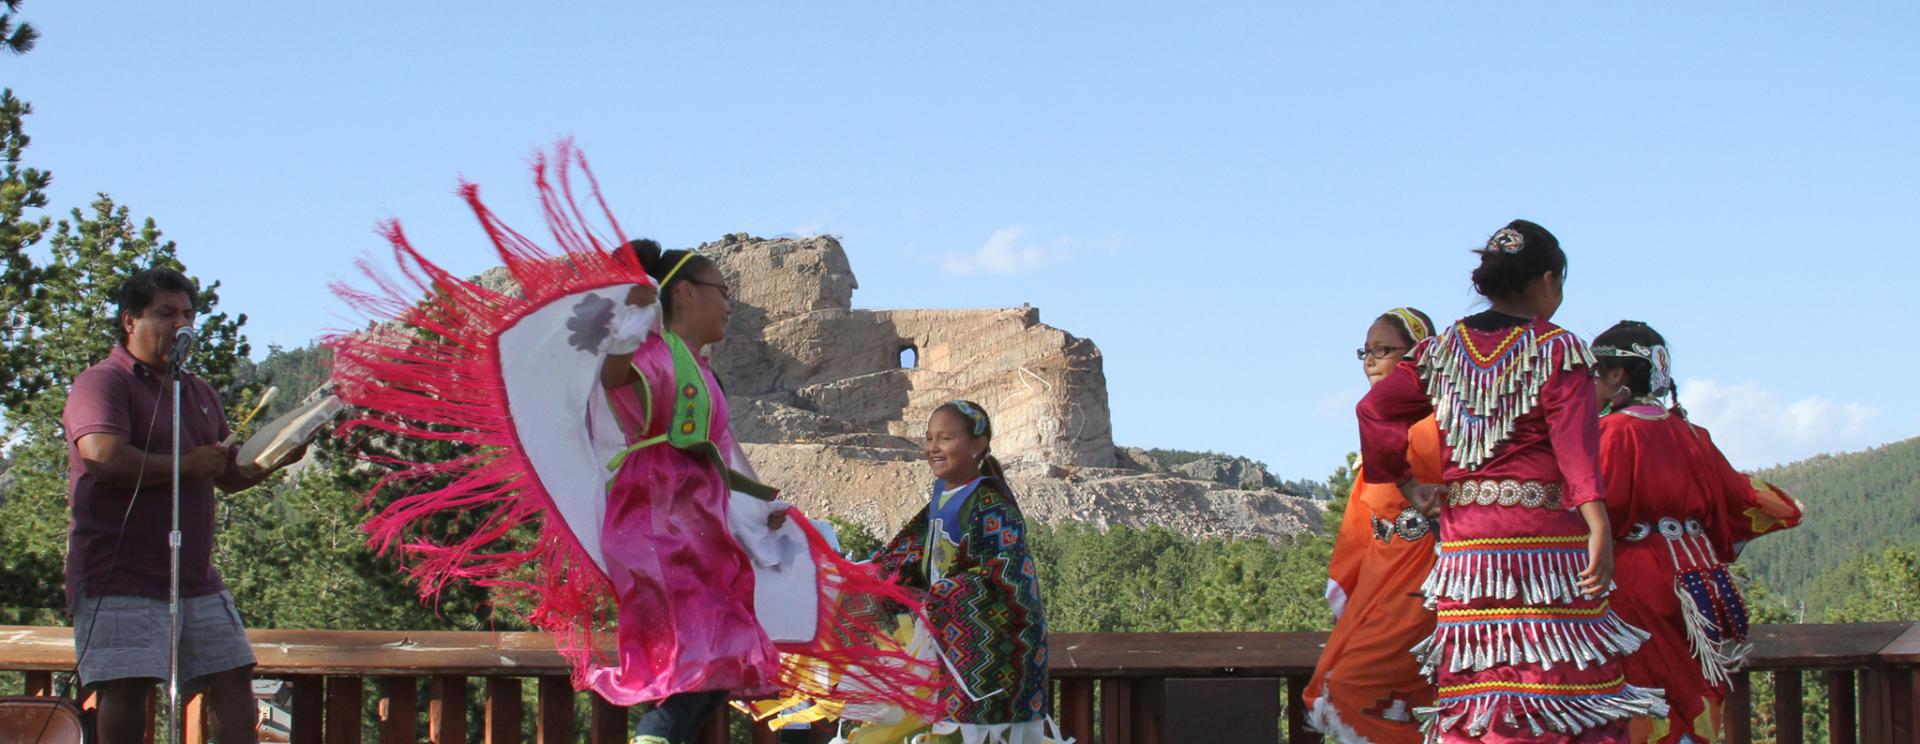 Native American Day | Crazy Horse Memorial